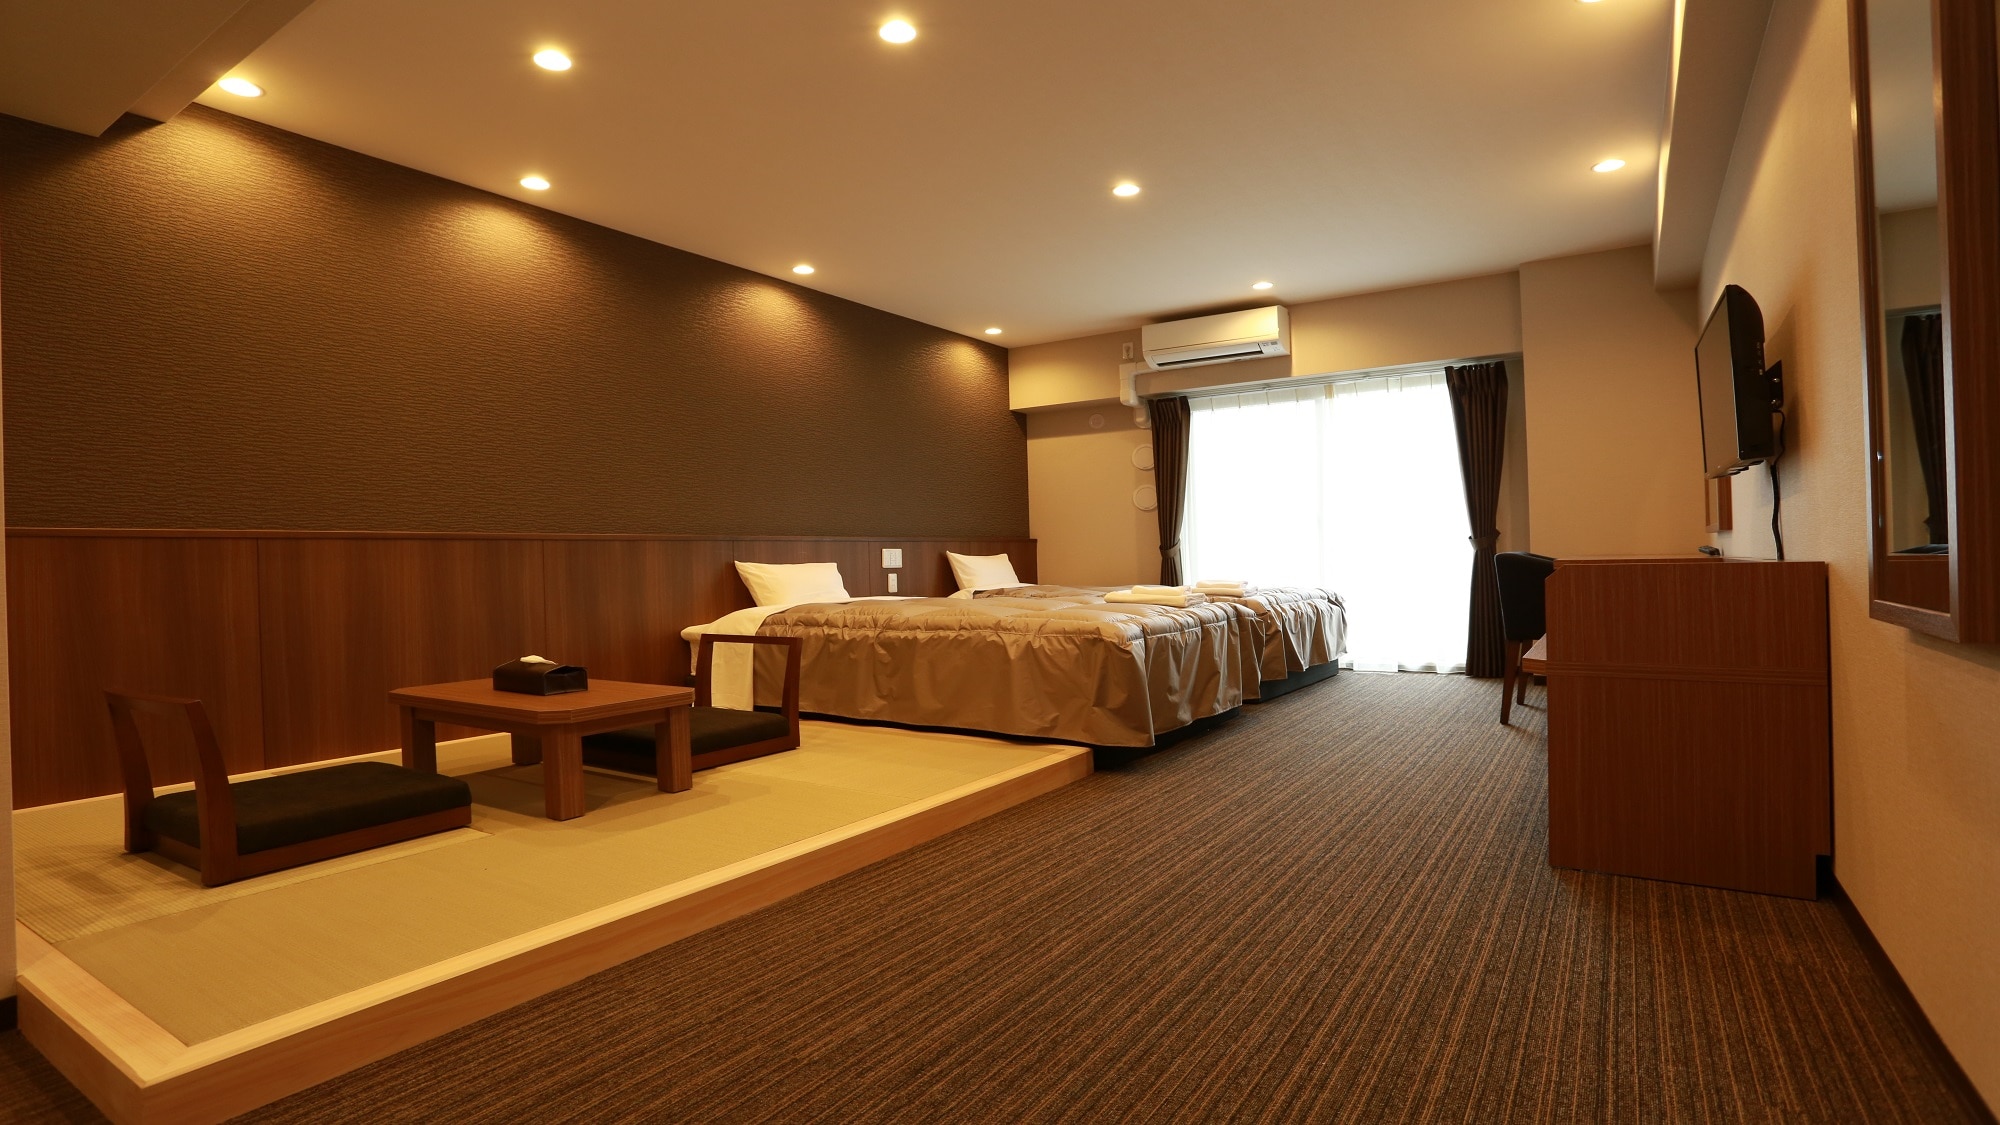 ■ 일본식 서양실 ■ 폭 120cm 침대 2개 + 다다미 공간